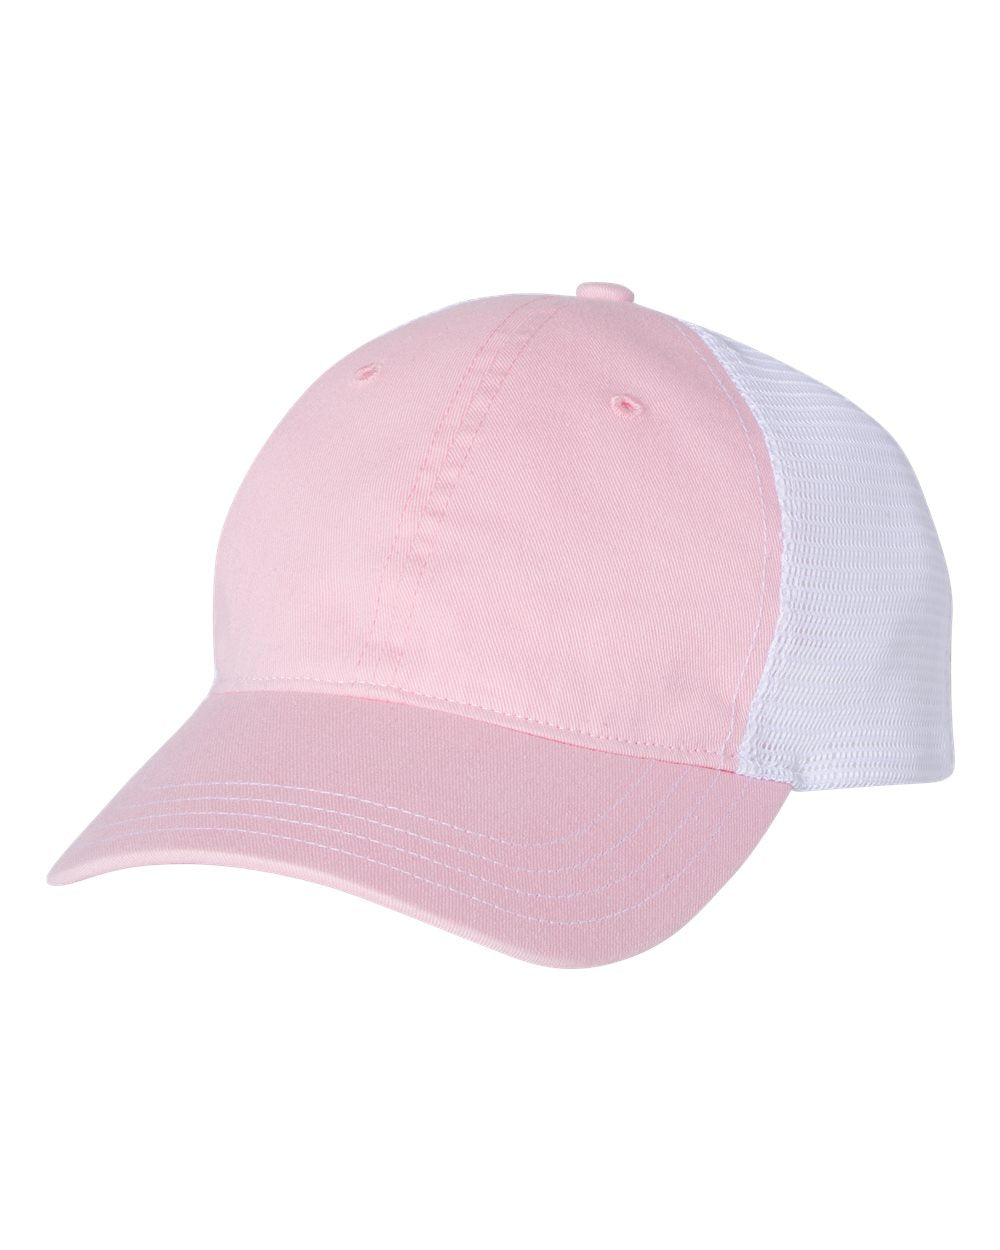 richardson cap pink white